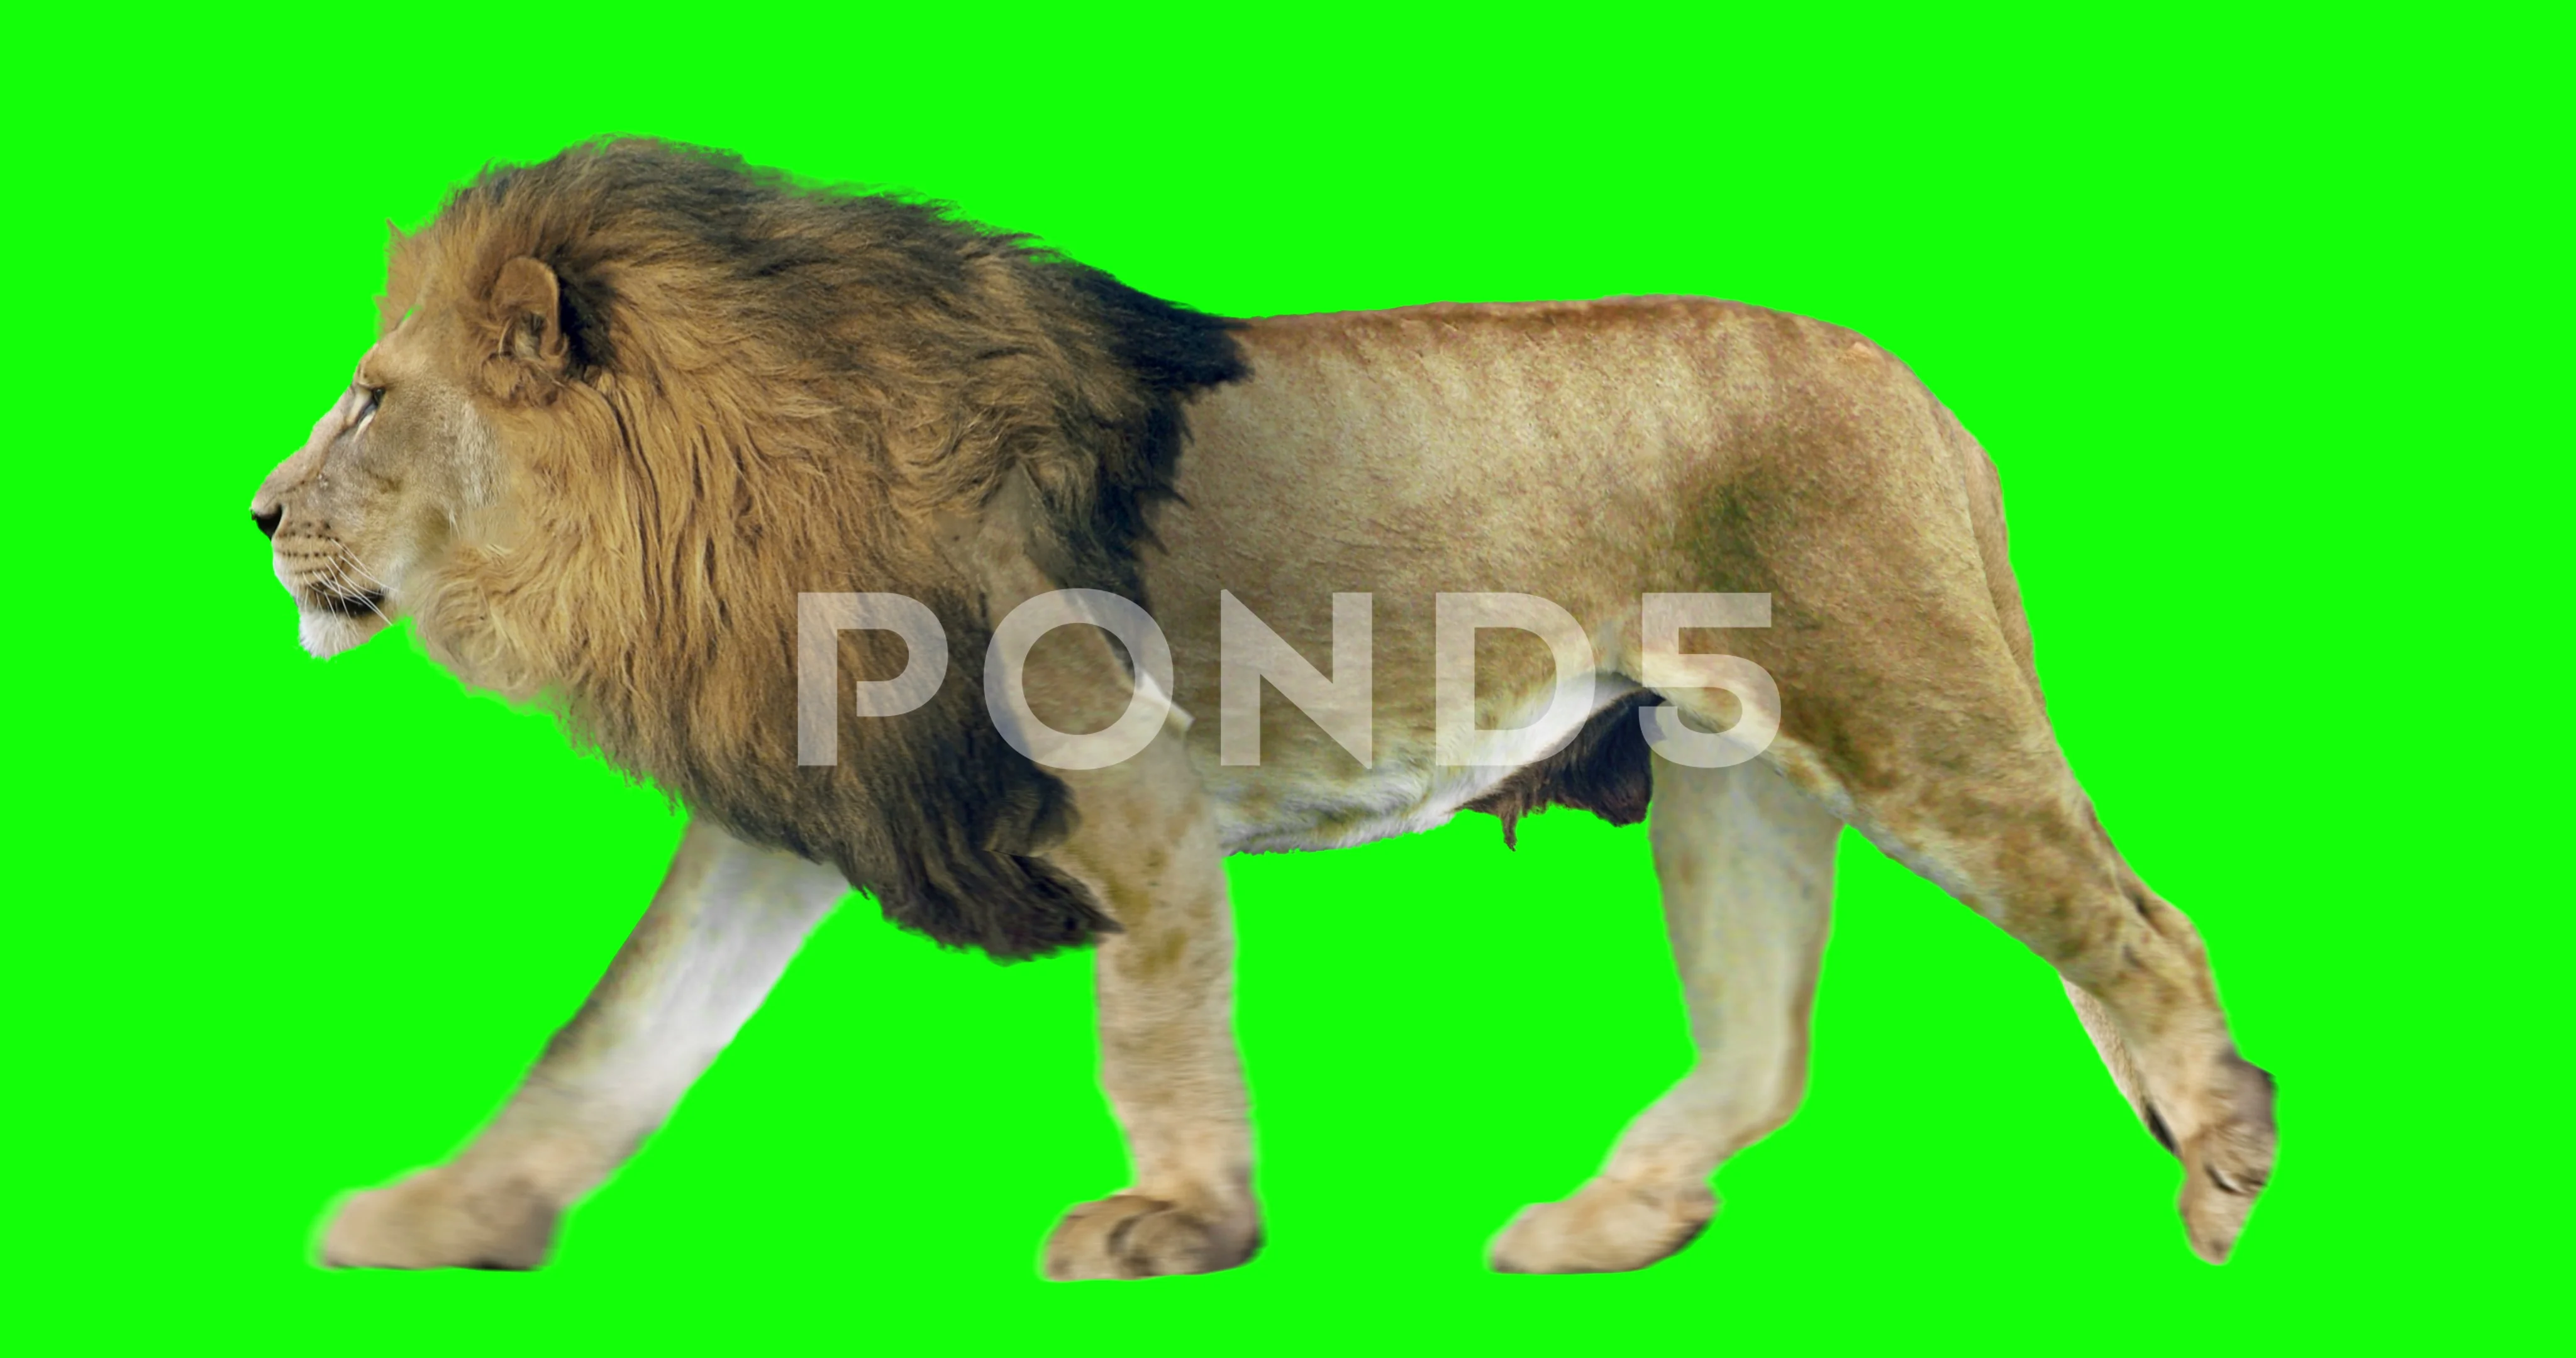 Chiêm ngưỡng vẻ đẹp hoang dã của châu Phi trong clip này với sự xuất hiện của sư tử đi bộ trên màn hình xanh. Một điểm nổi bật trong các video của bạn có thể đạt được nhờ vào sự kết hợp tạo hình ảnh màn hình xanh và hình ảnh thật.